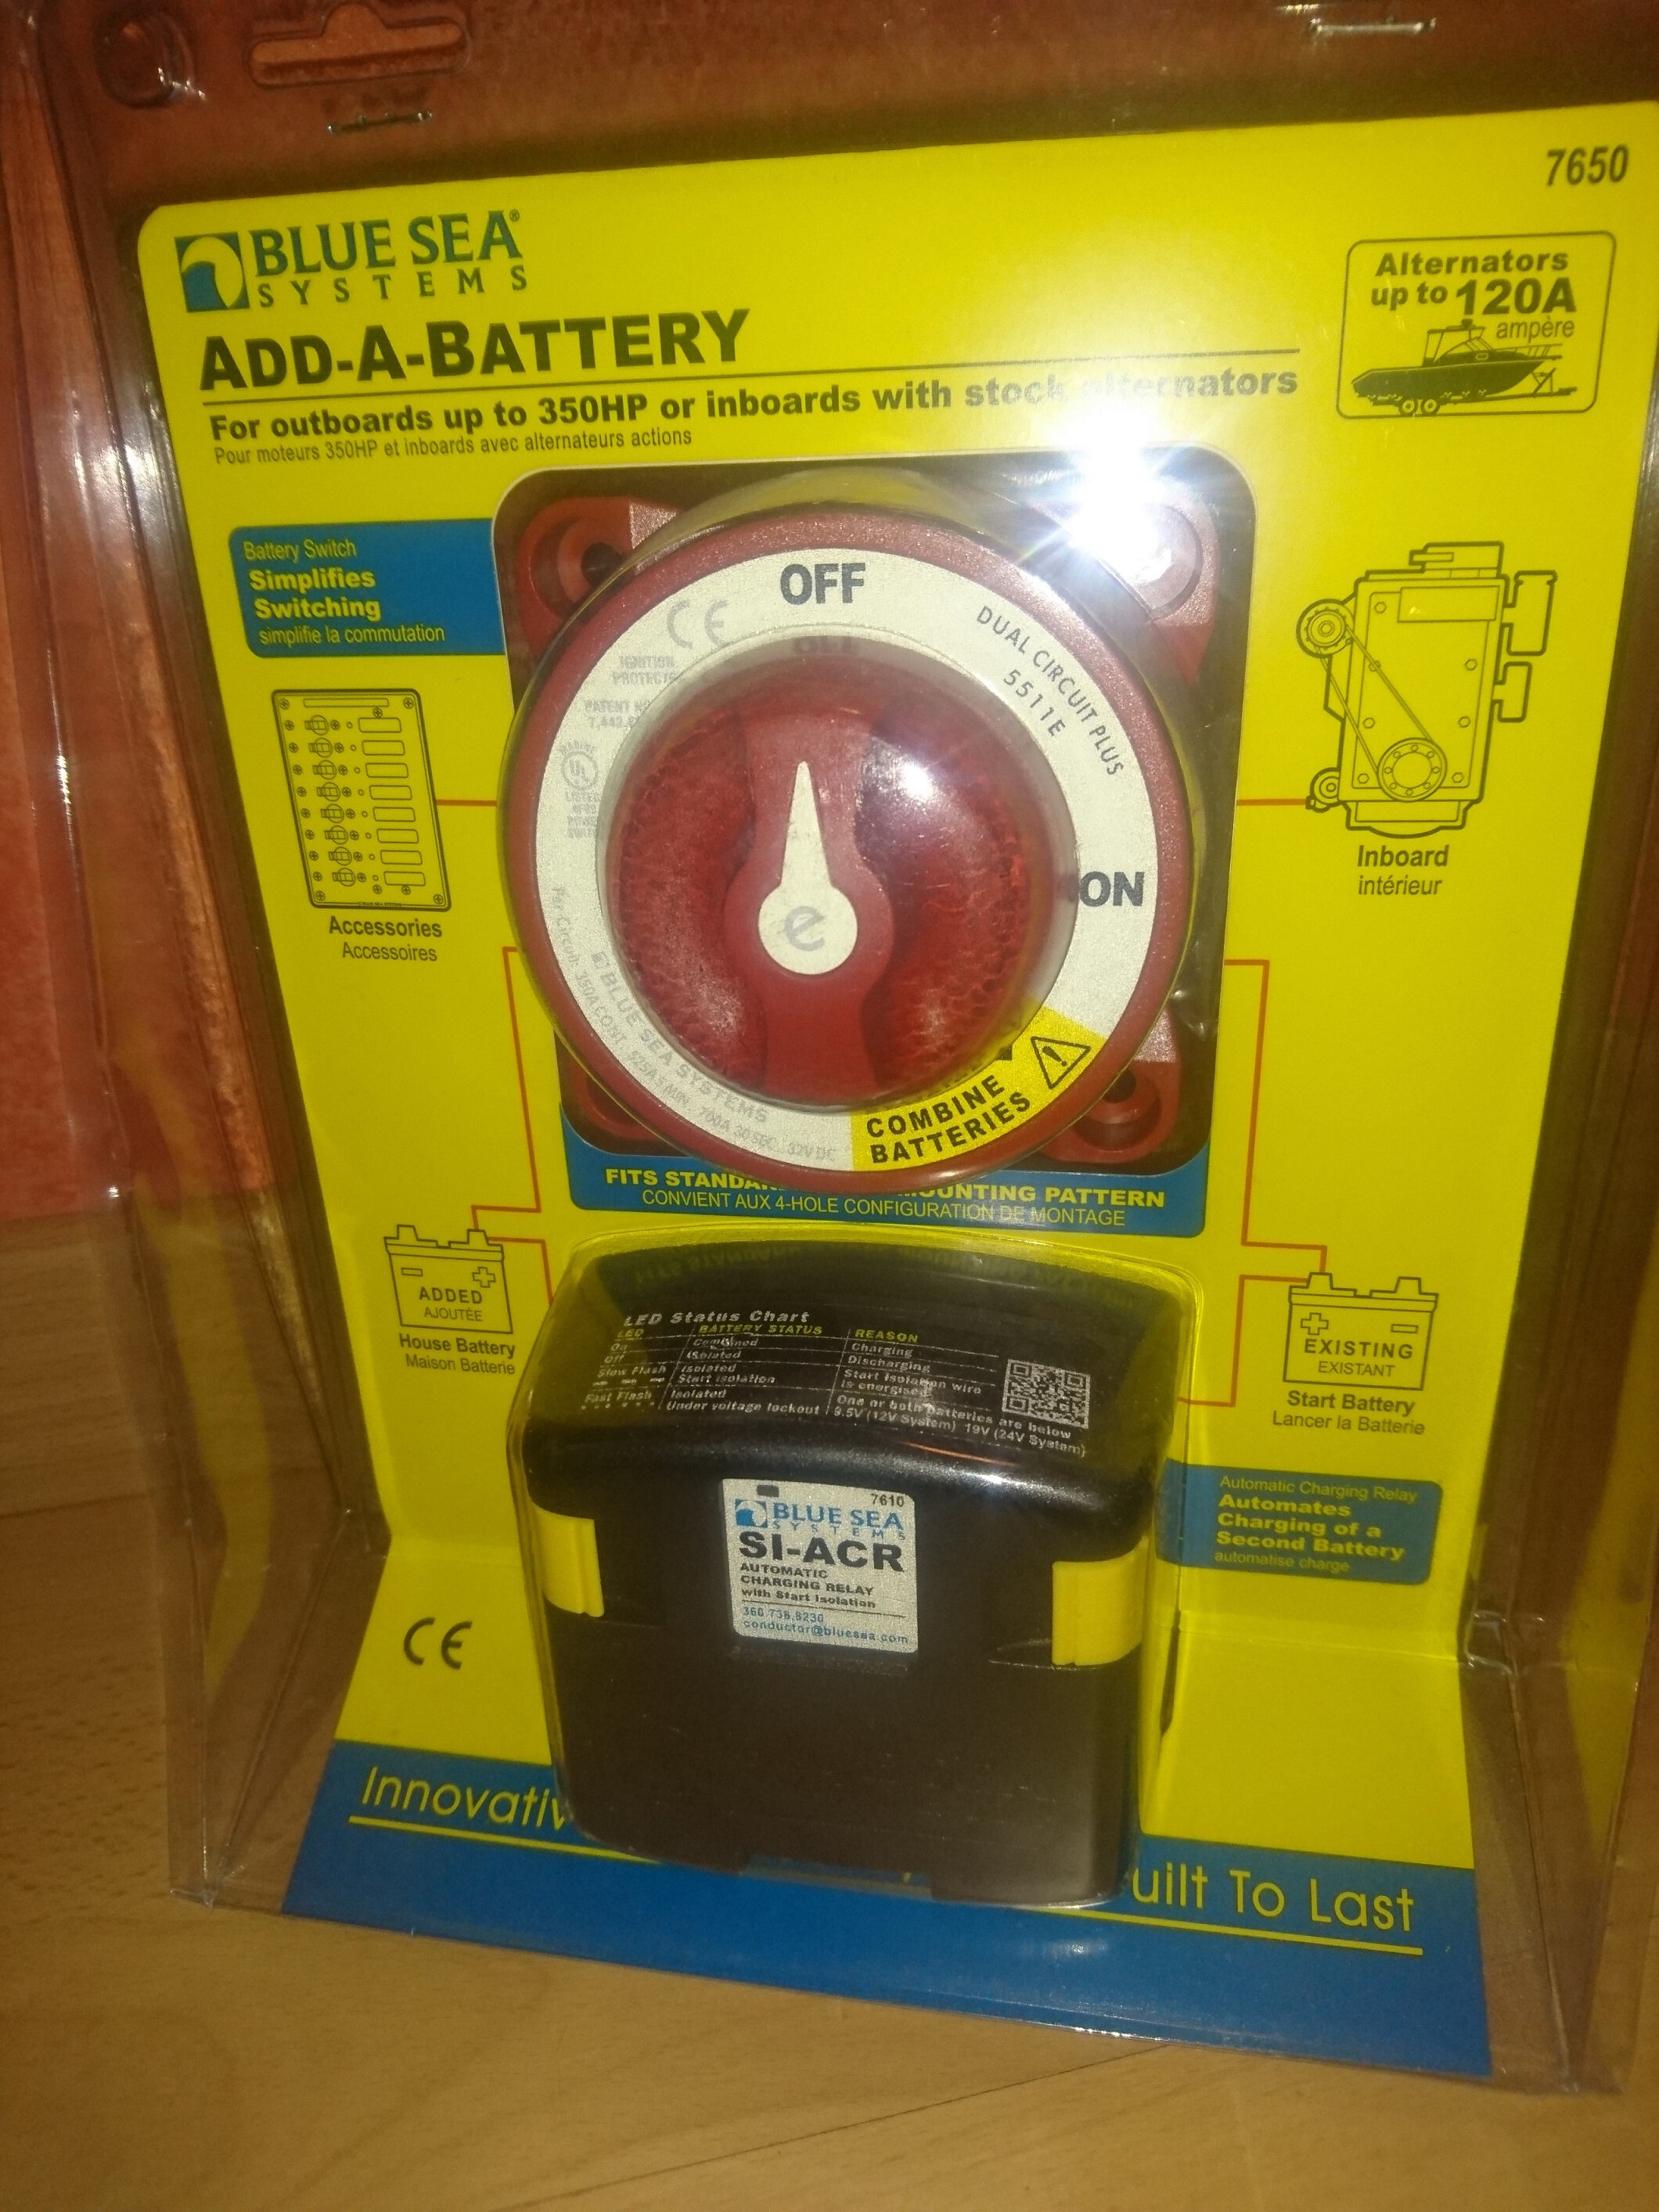 Installer un coupleur-séparateur pour recharger les batteries